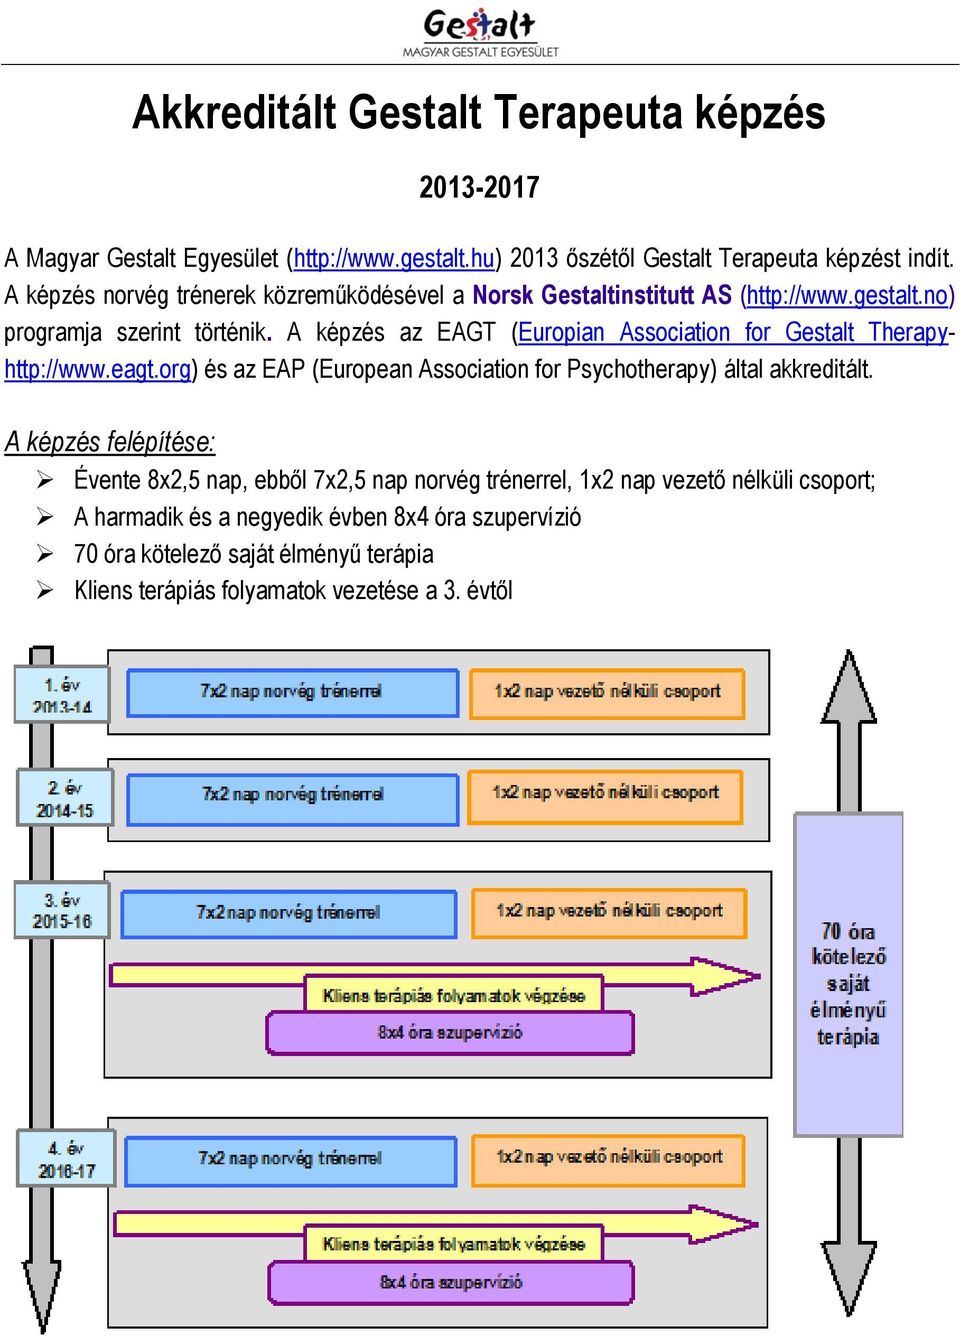 A képzés az EAGT (Europian Association for Gestalt Therapyhttp://www.eagt.org) és az EAP (European Association for Psychotherapy) által akkreditált.